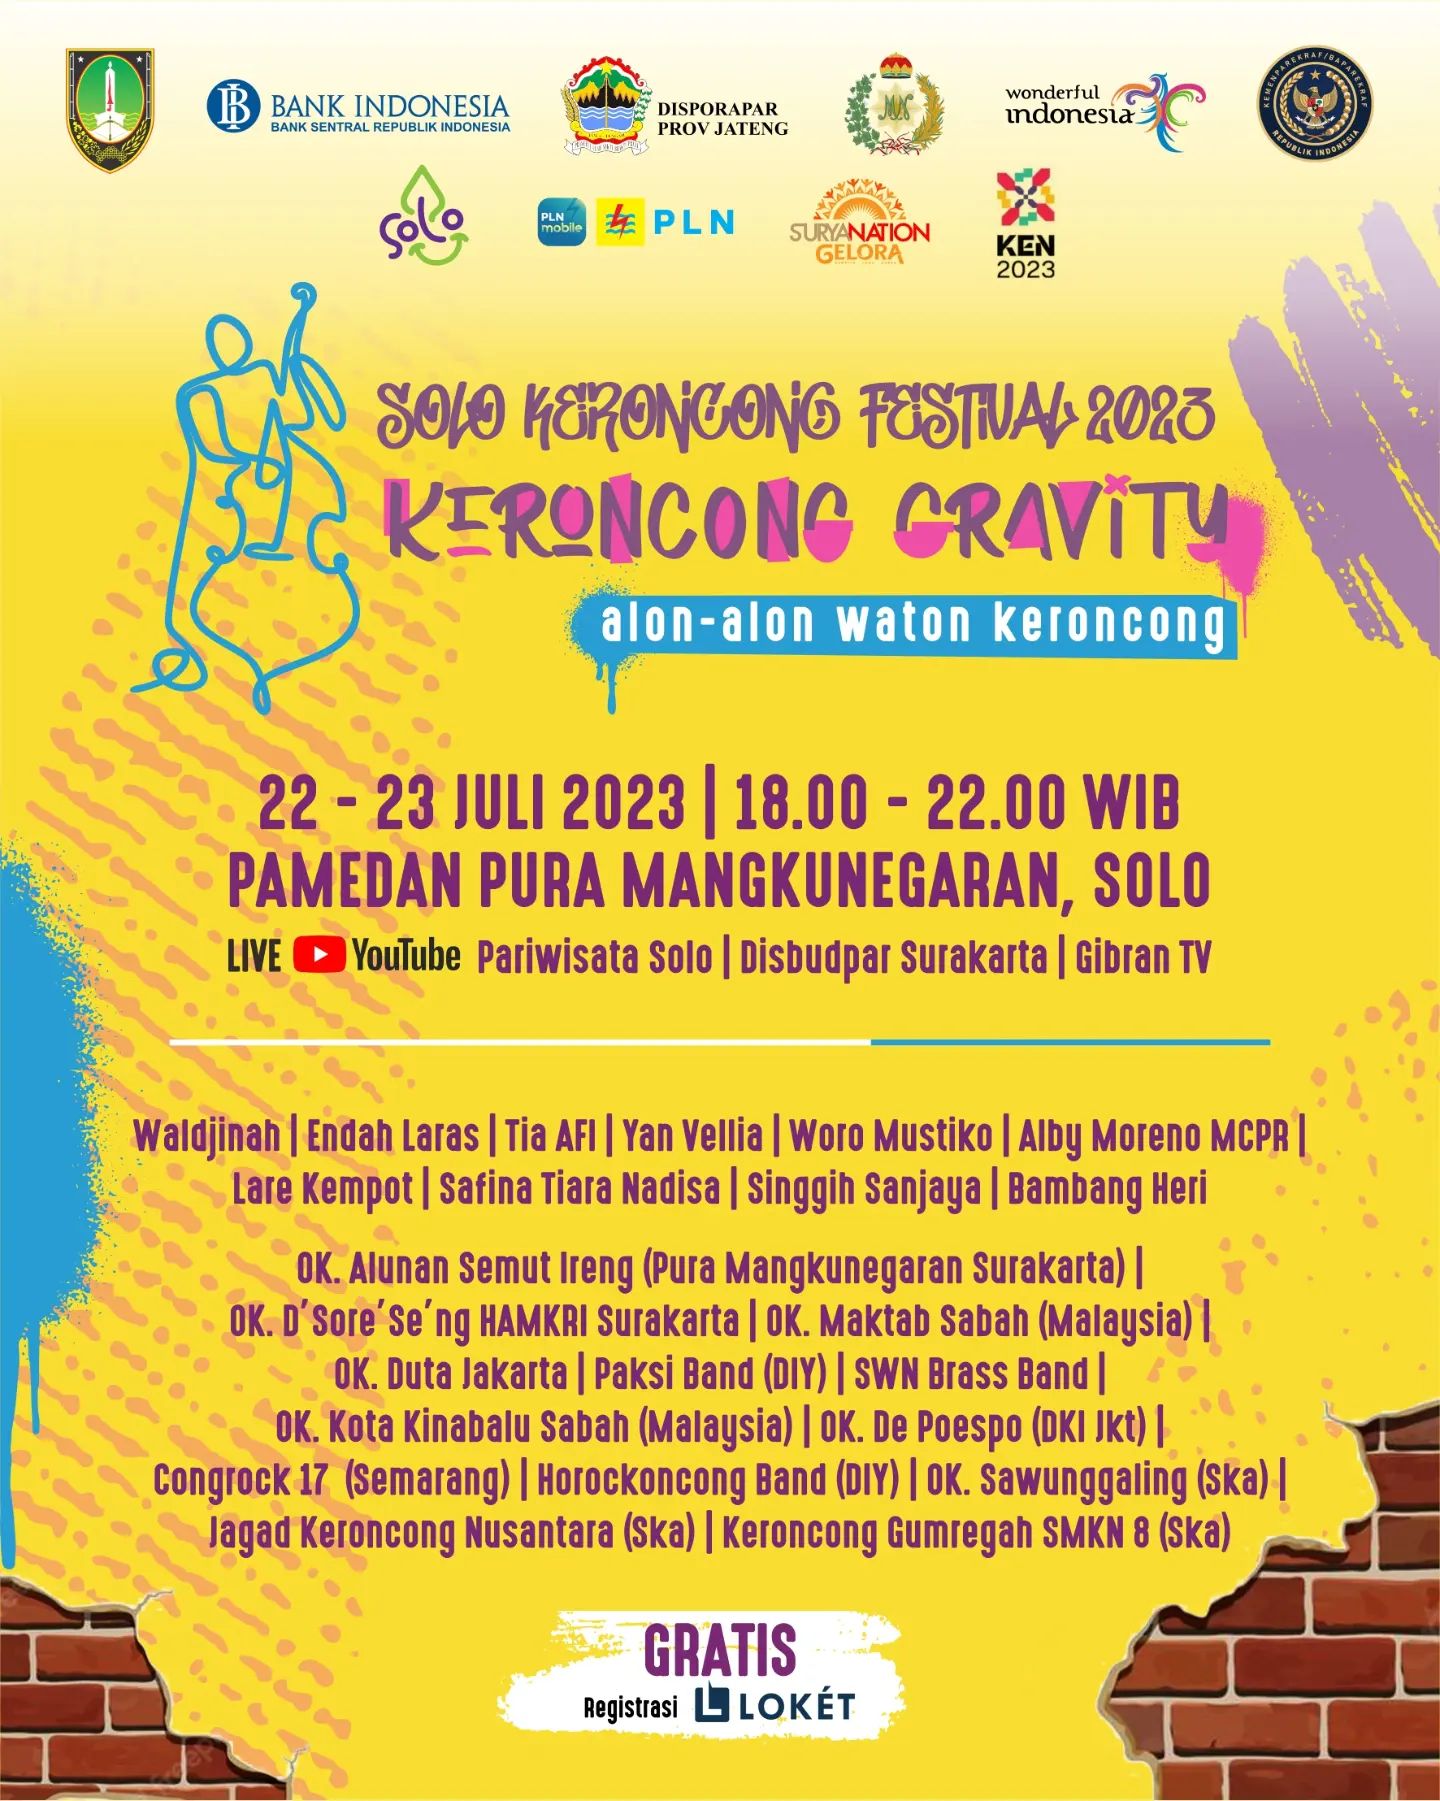 Solo Keroncong Festival 2023 Mengusung Tema “Keroncong Gravity: Alon ...